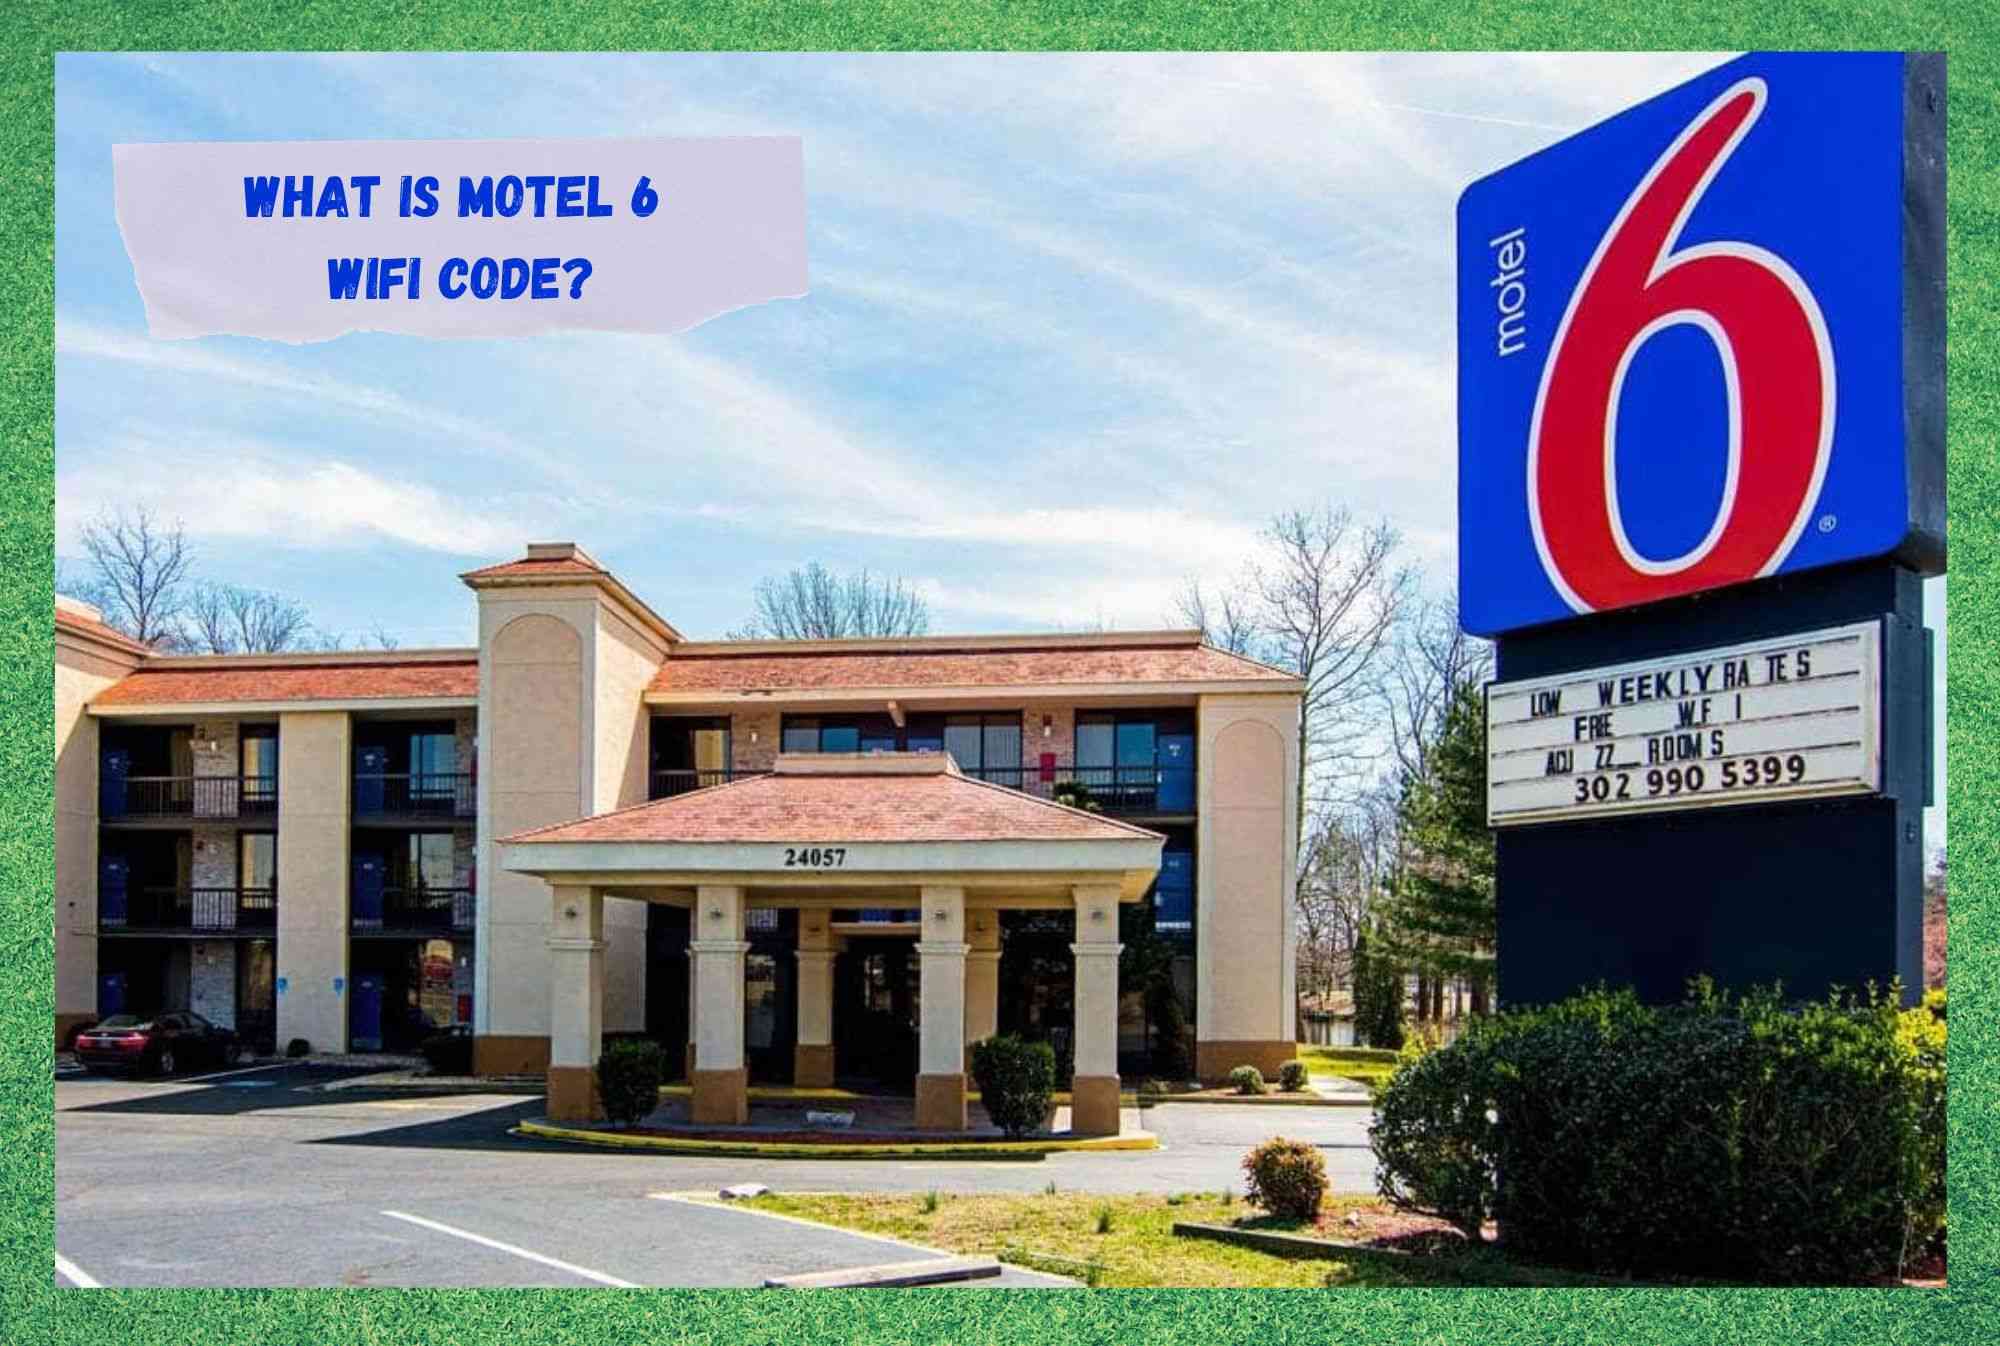 ¿Qué es el código WiFi del Motel 6?